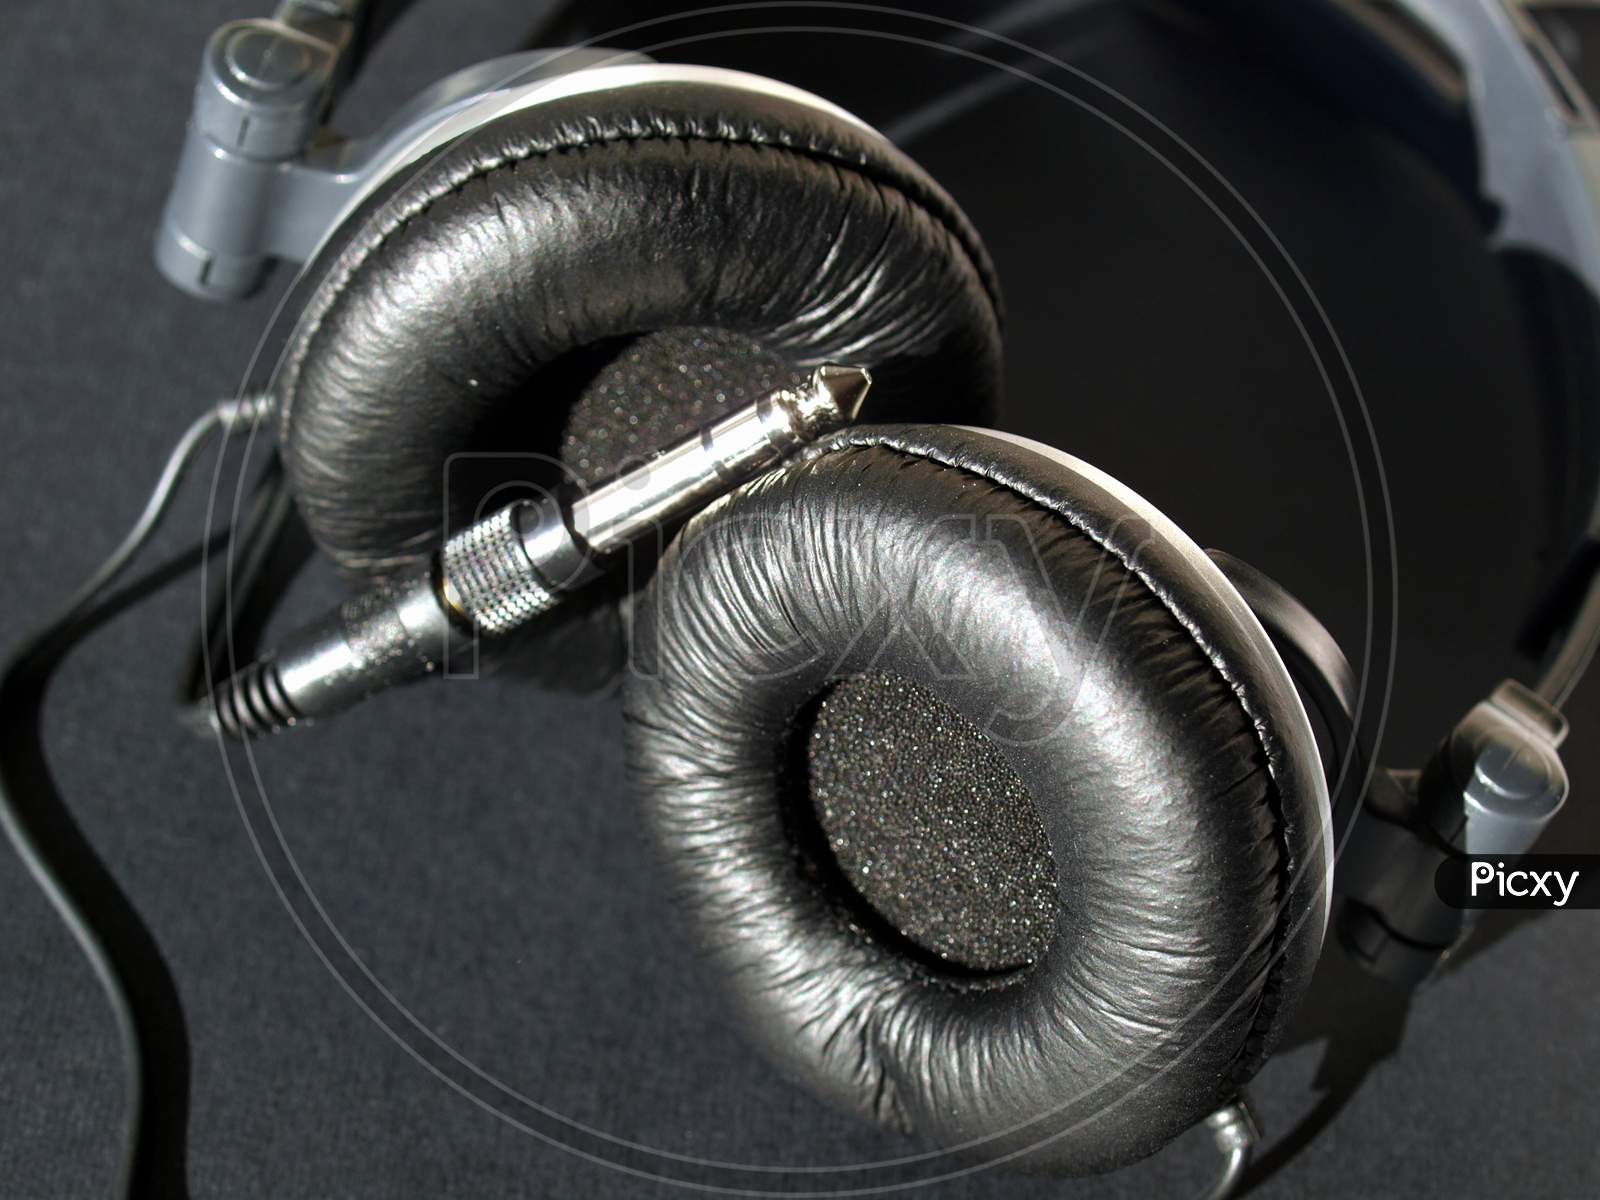 Headphones For Music Listening